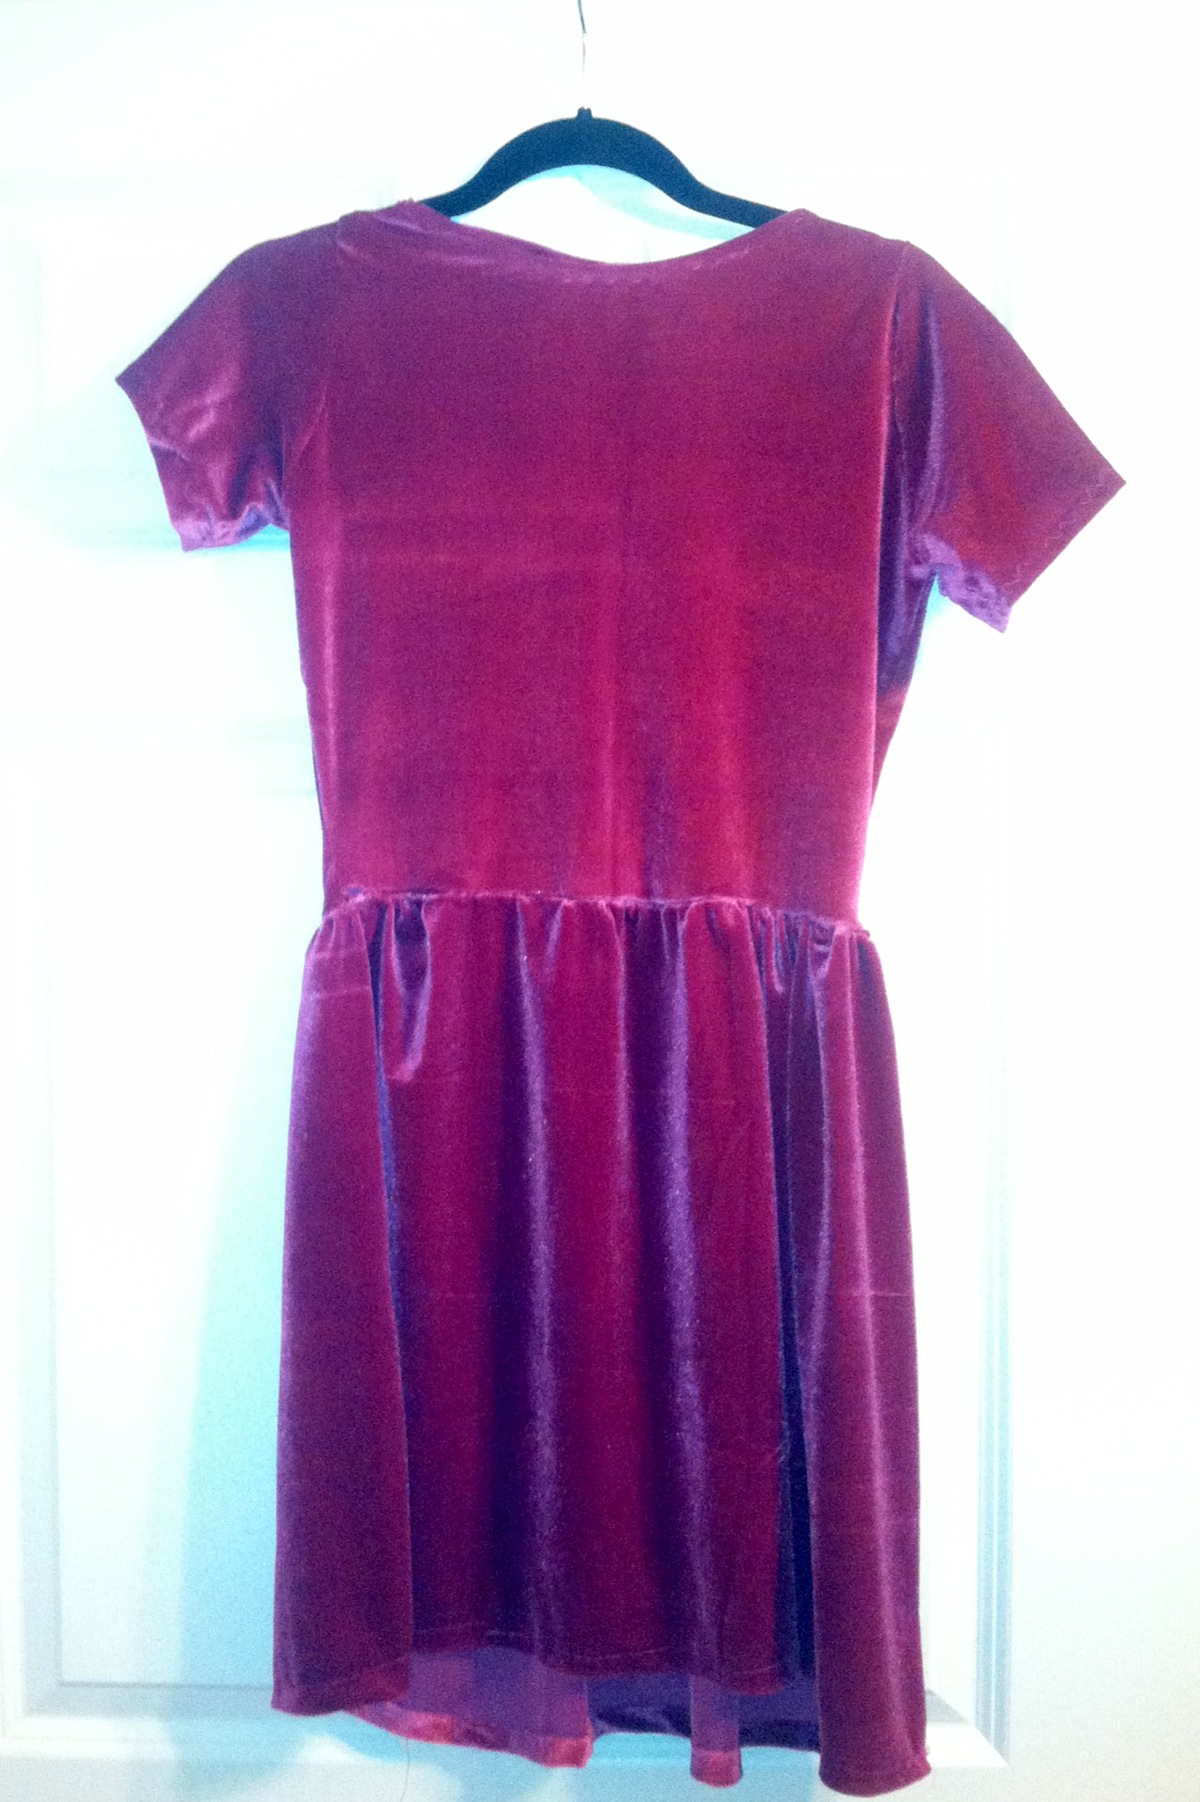 dress velvet fiber sewing Textiles garment design garment Clothing